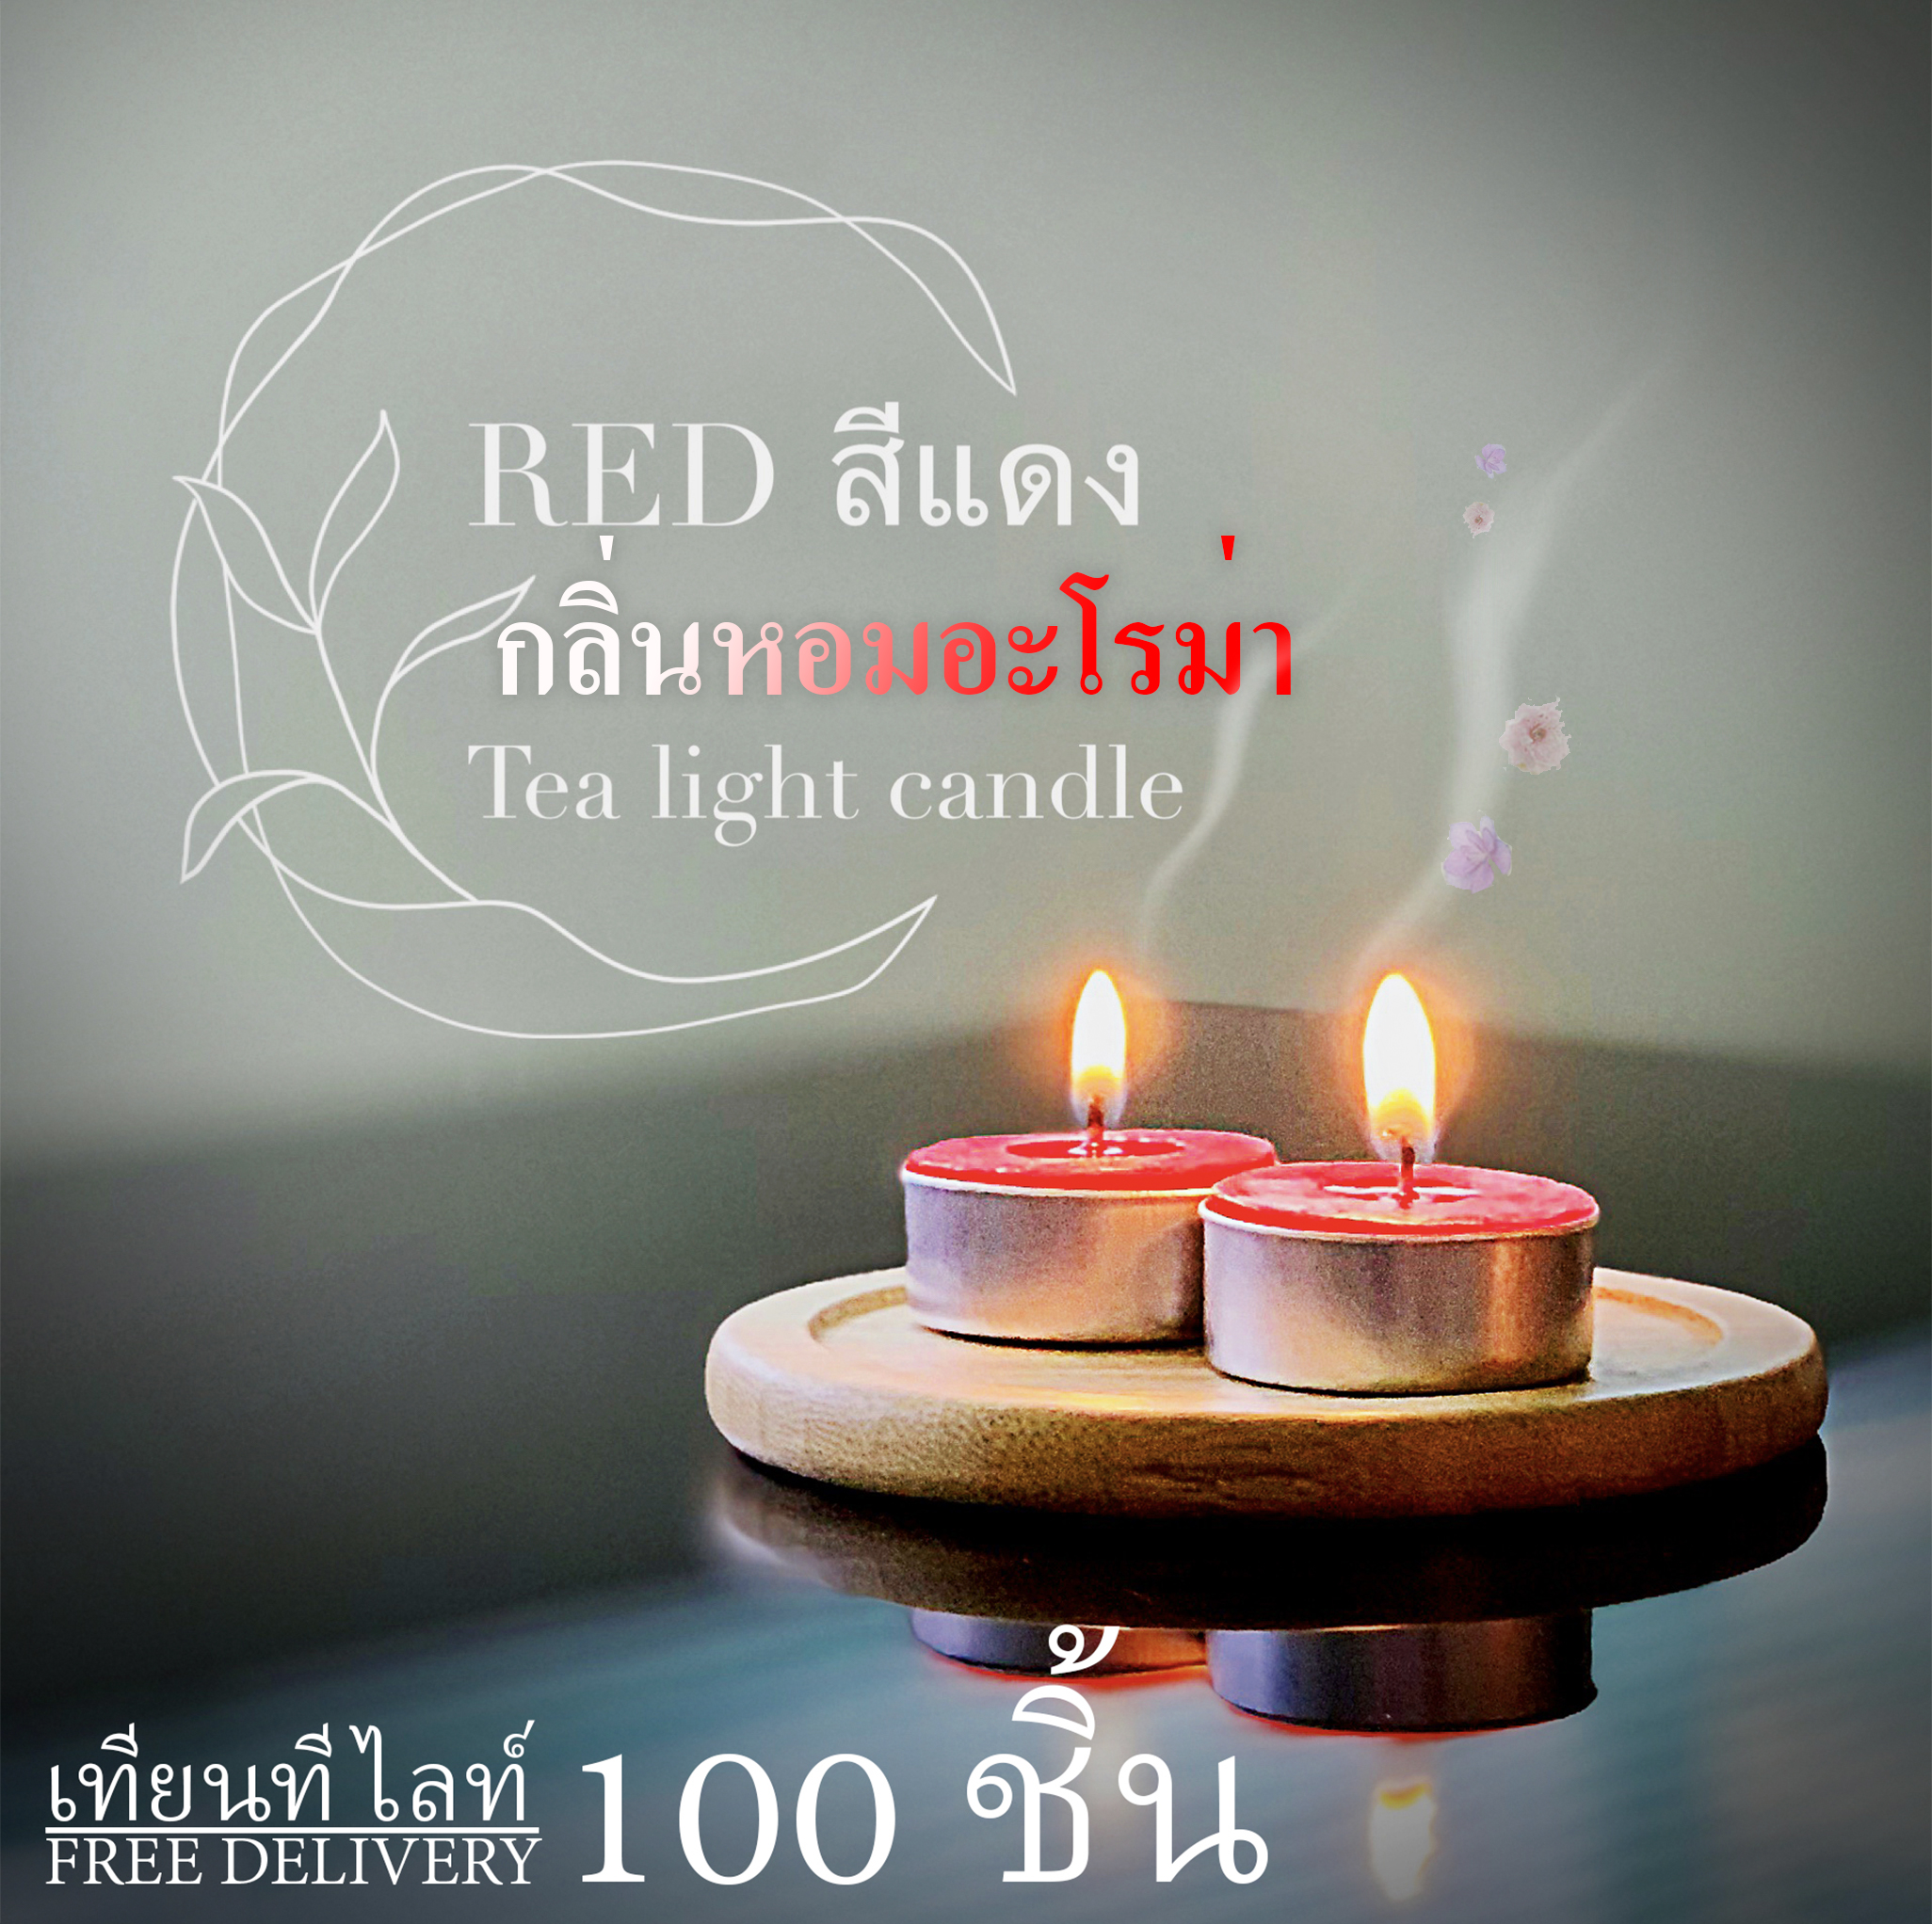 ส่งฟรี เทียนทีไลท์สีแดงผลิตเองที่ไทย (Tealight Red) 100 ชิ้น/กลิ่นอโรม่า จุดได้นานสุด 5 ชม.รับออเดอร์ผลิตจำนวนมากราคาถูก